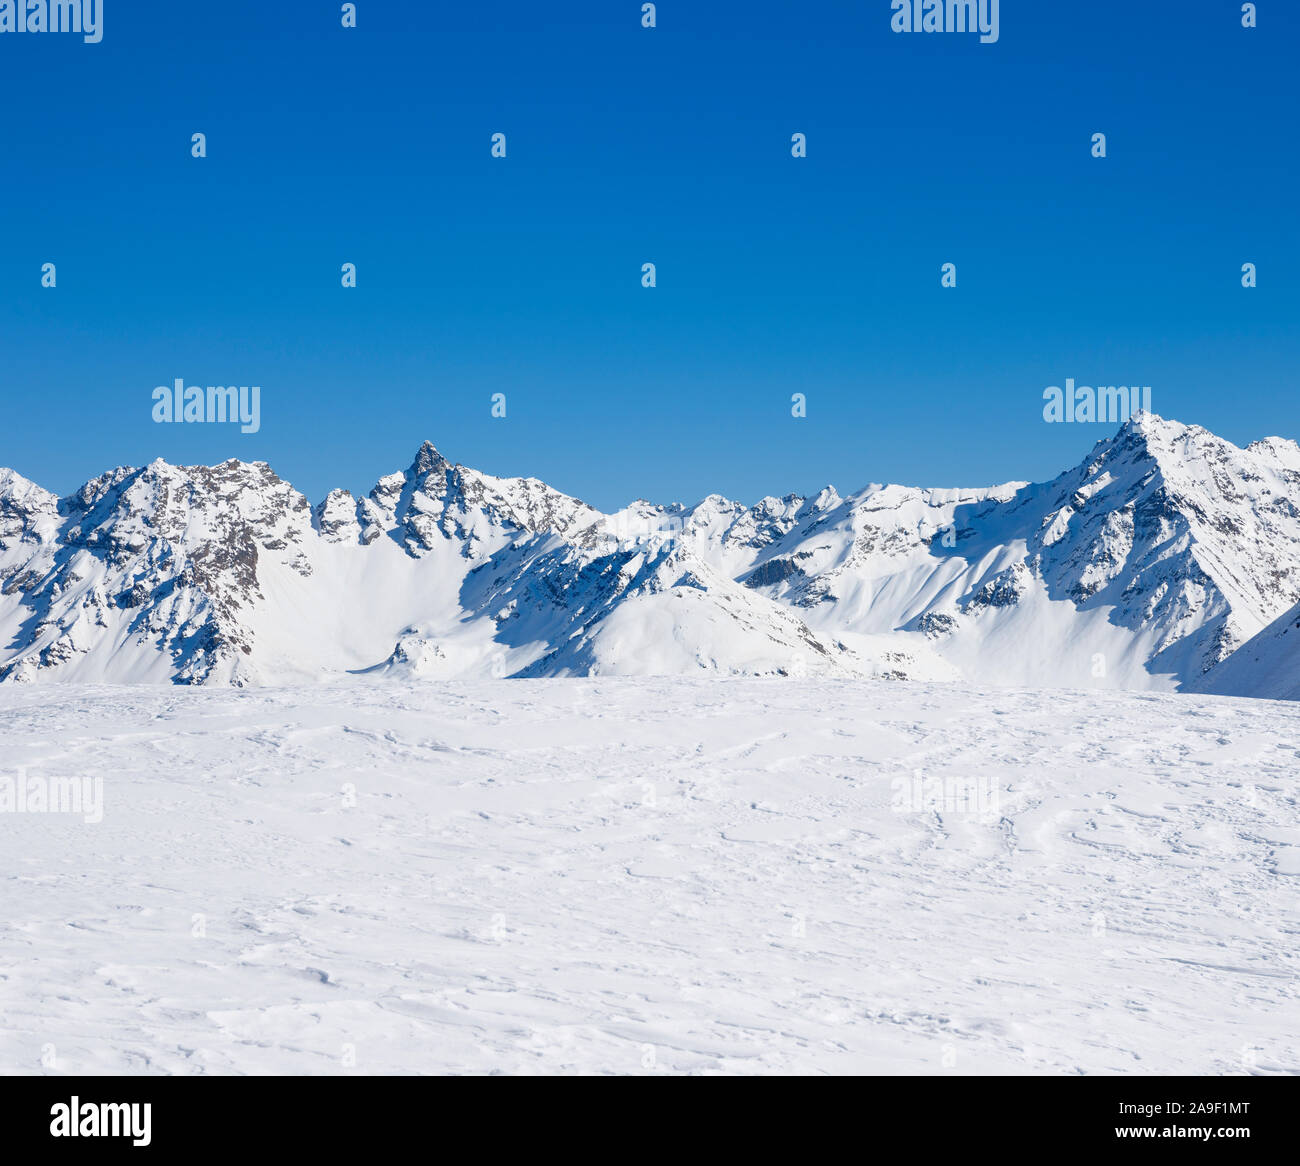 Snowy mountains Stock Photo